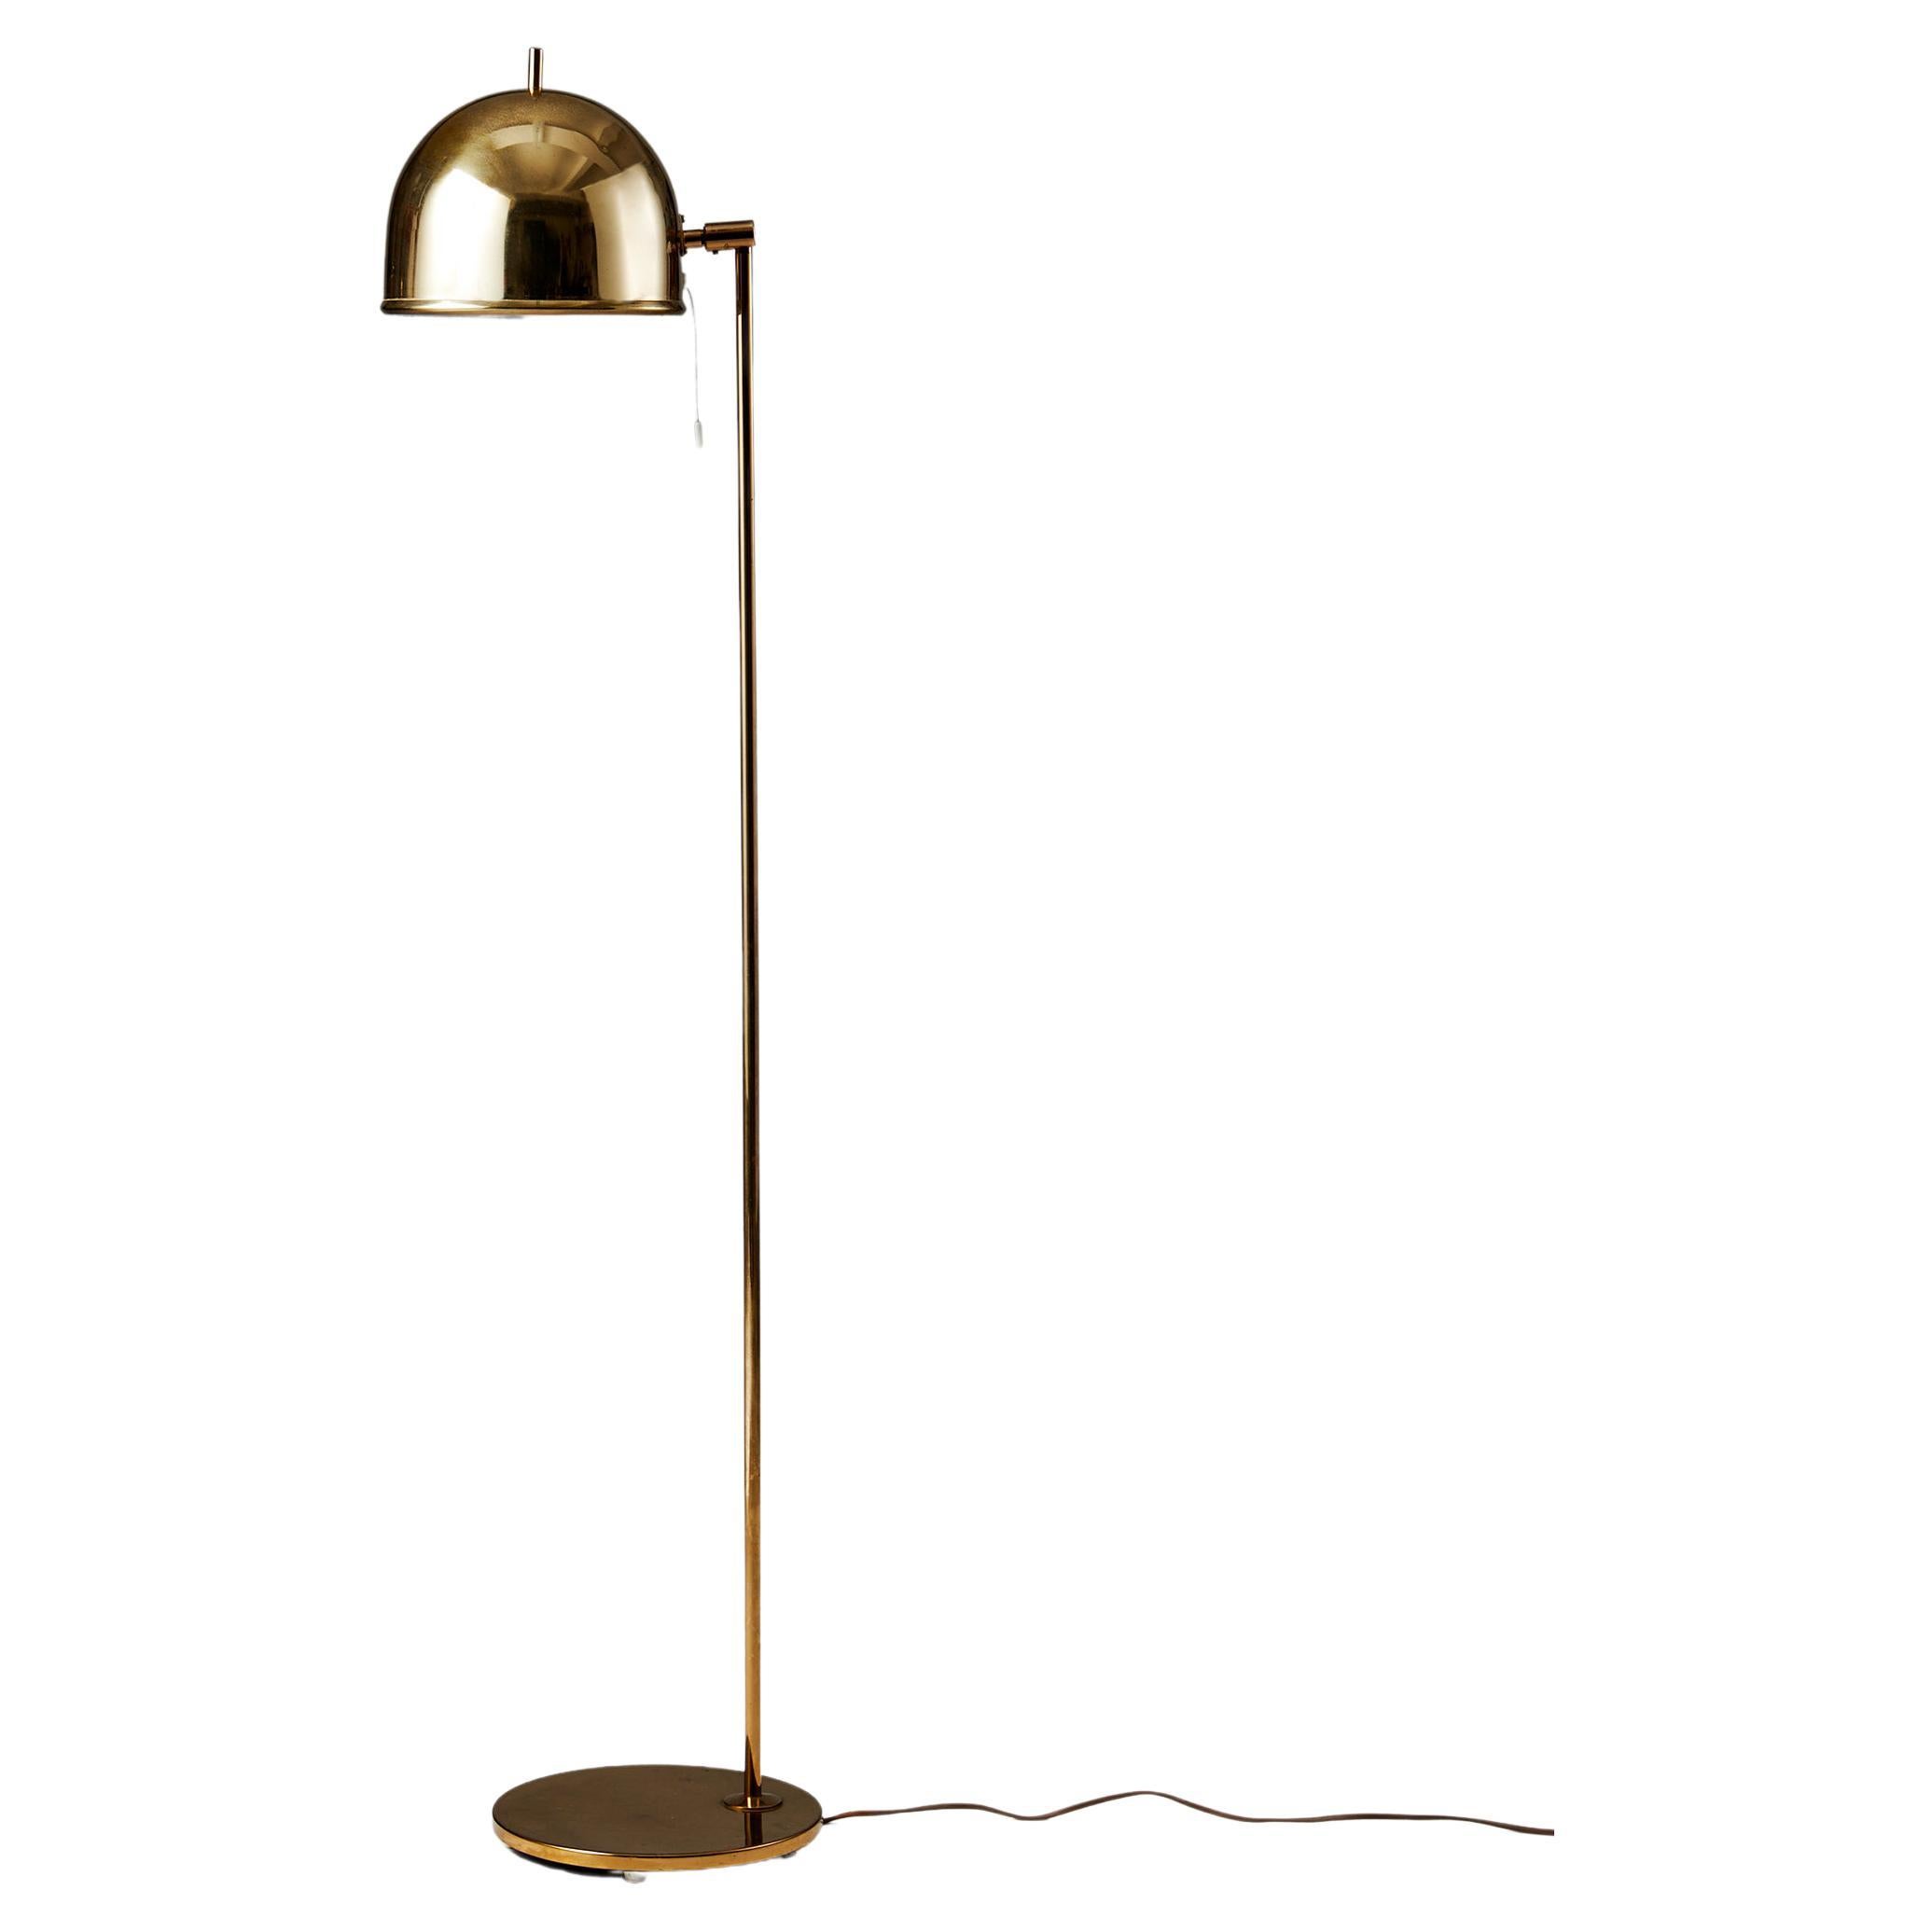 Floor Lamp Model G-075 Designed by Eje Ahlgren for Bergboms, Sweden, 1960s